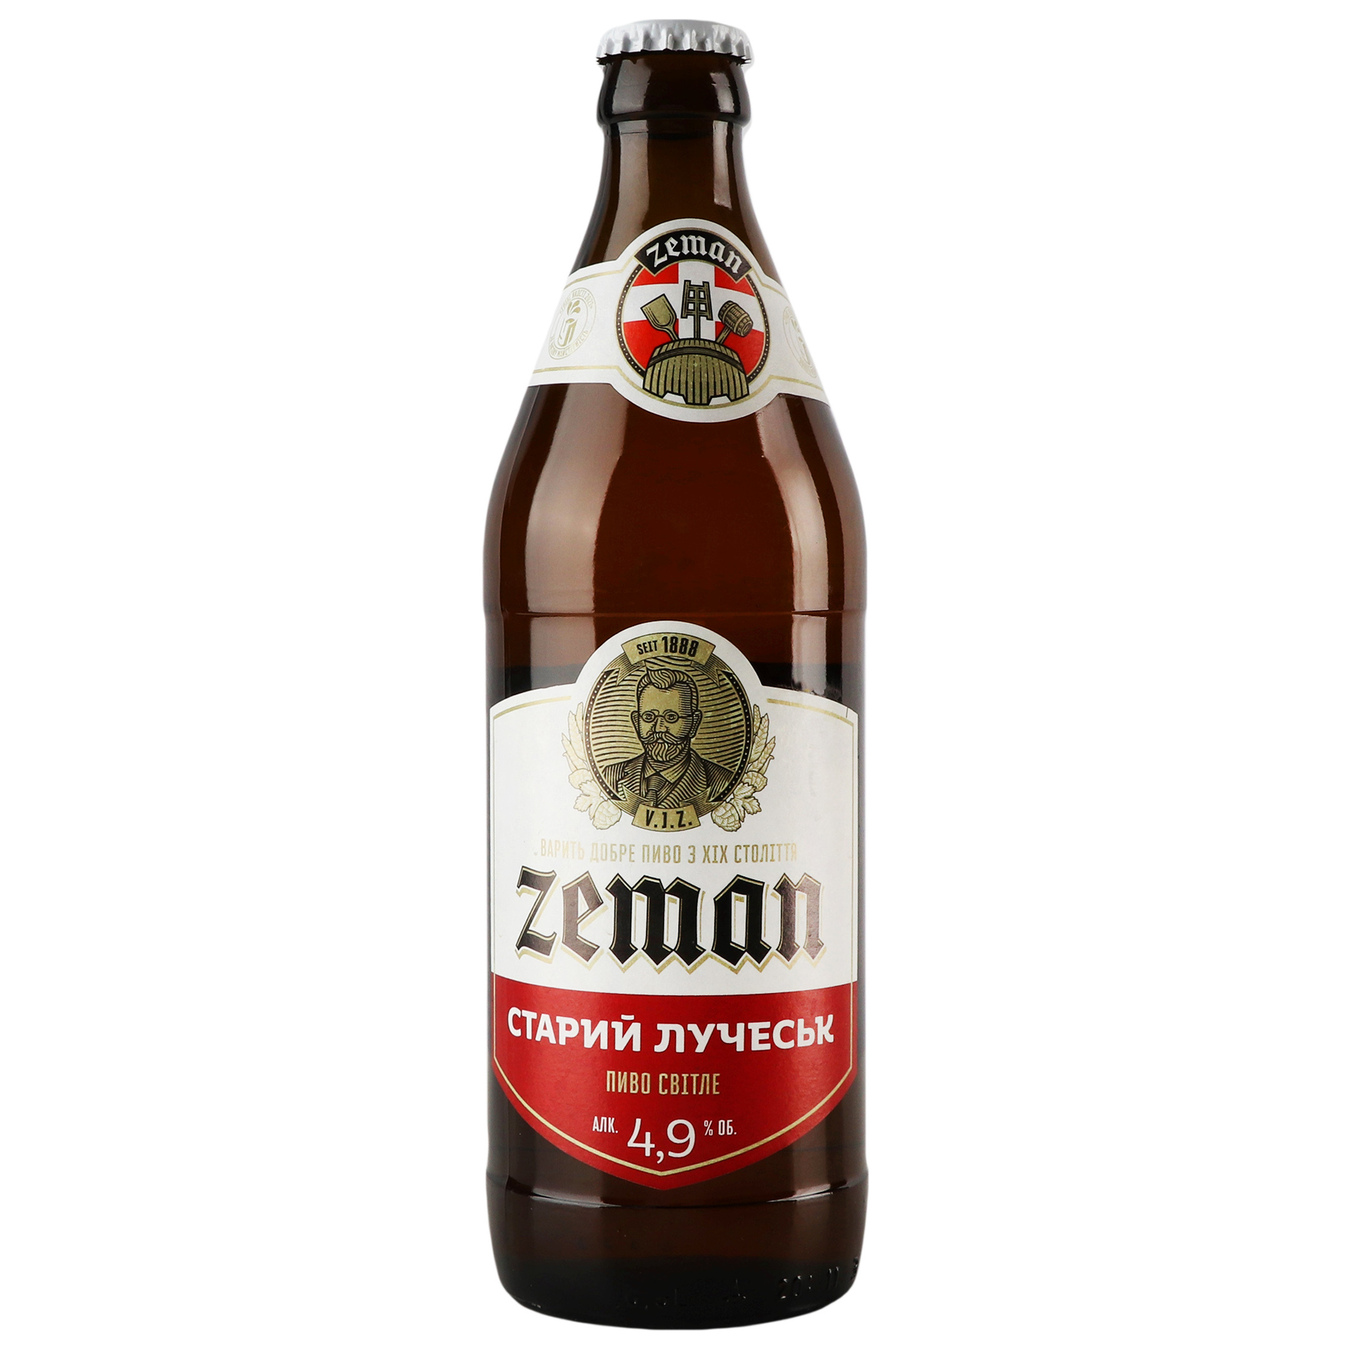 Light beer Zeman Stary Luchesk 4.9% 0.5 l